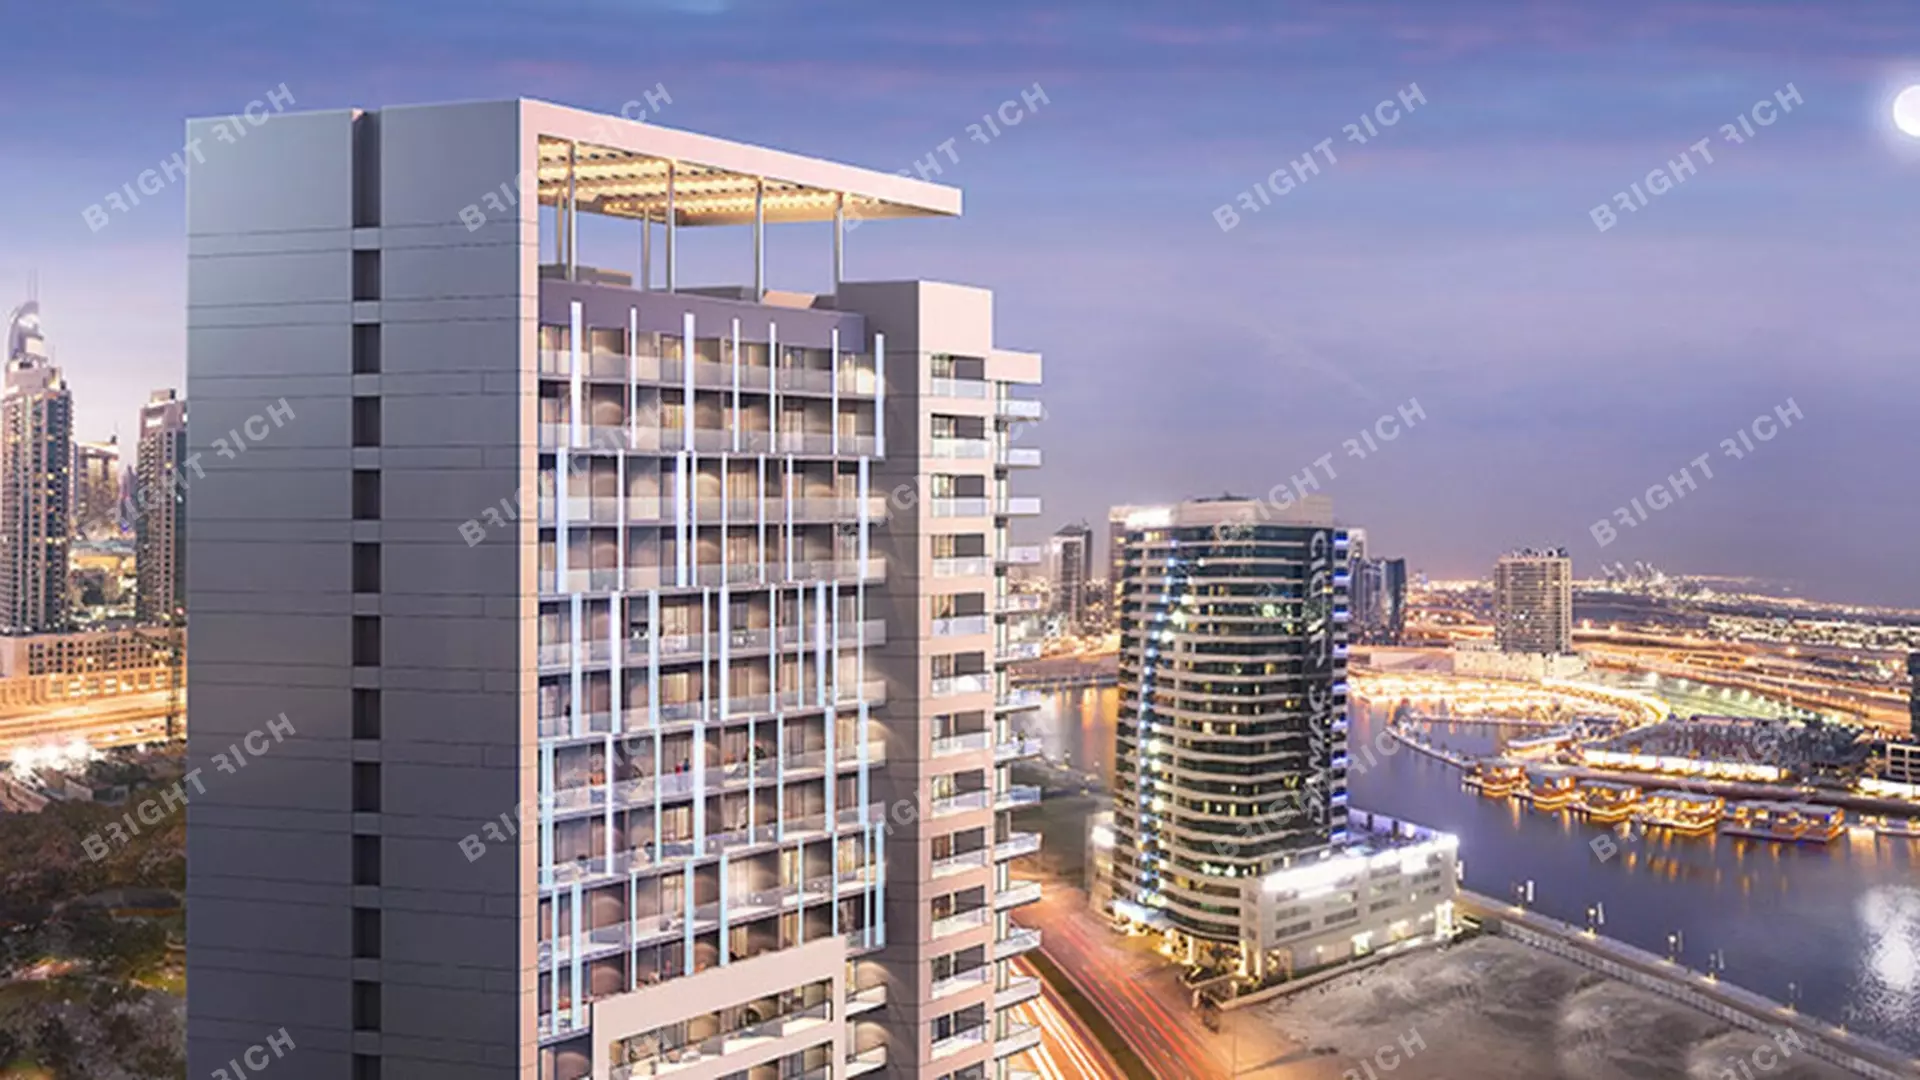 Reva Residences, apart complex in Dubai